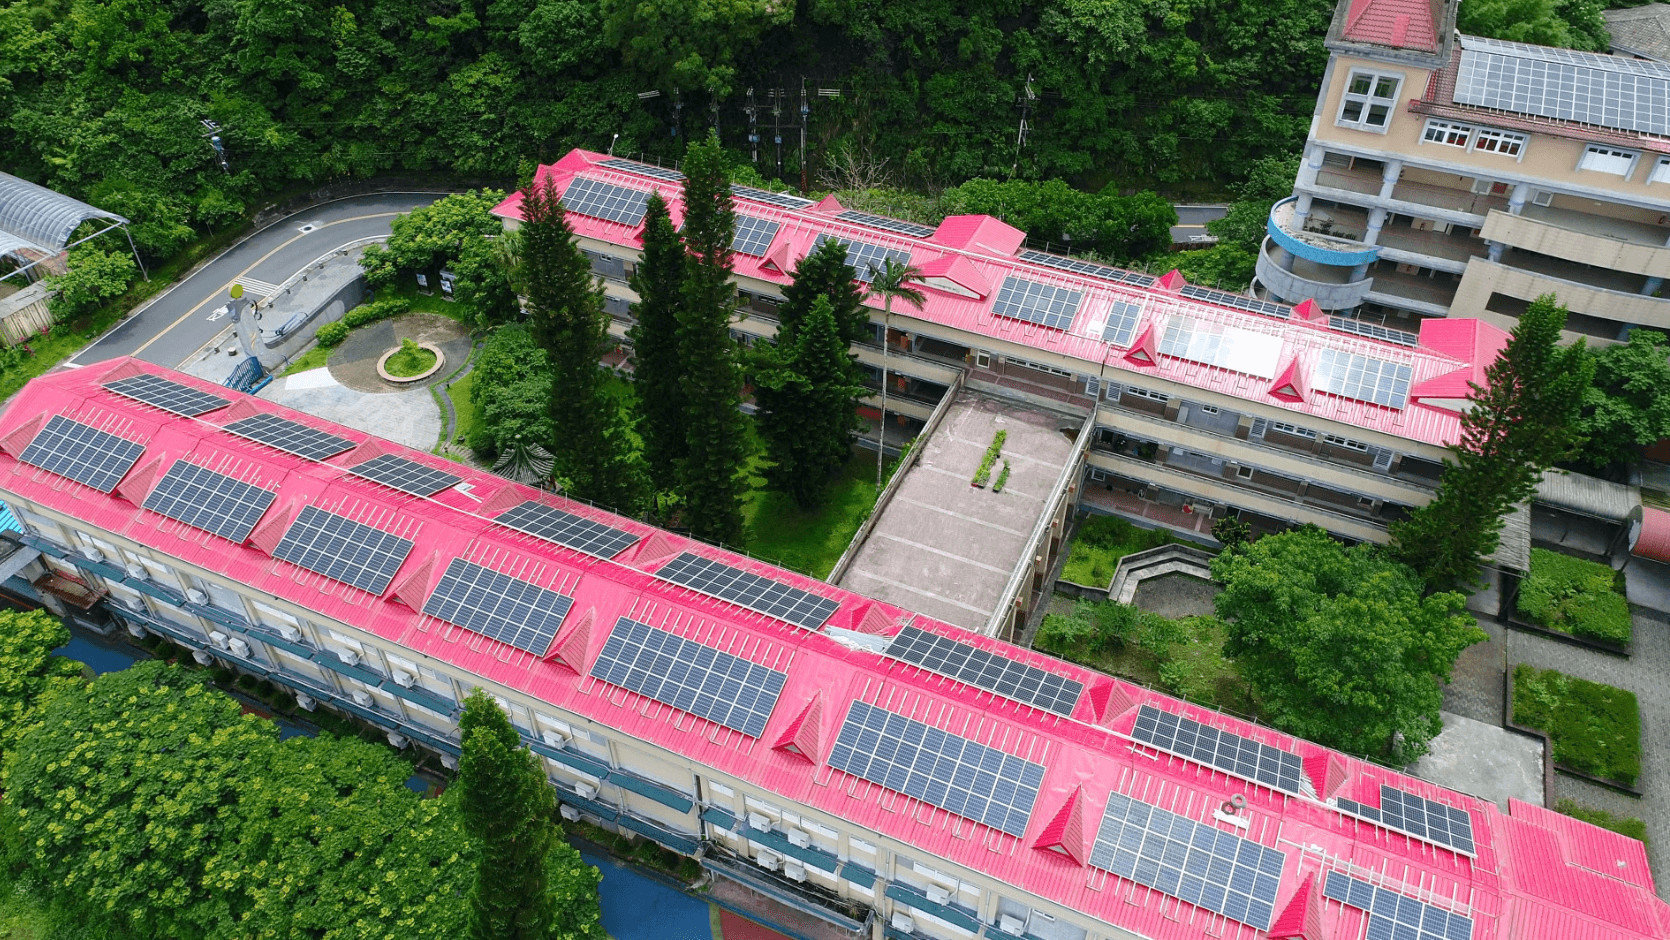 校園太陽能、校園光電、新北太陽能、太陽能廠商、台灣太陽能、台灣太陽能板、太陽能建置、校園種電、屋頂型種電、太陽能種電、種電、太陽板、太陽能品牌、太陽能廠商、台灣太陽能品牌、台灣太陽能廠商、屋頂型太陽能、校園型太陽能